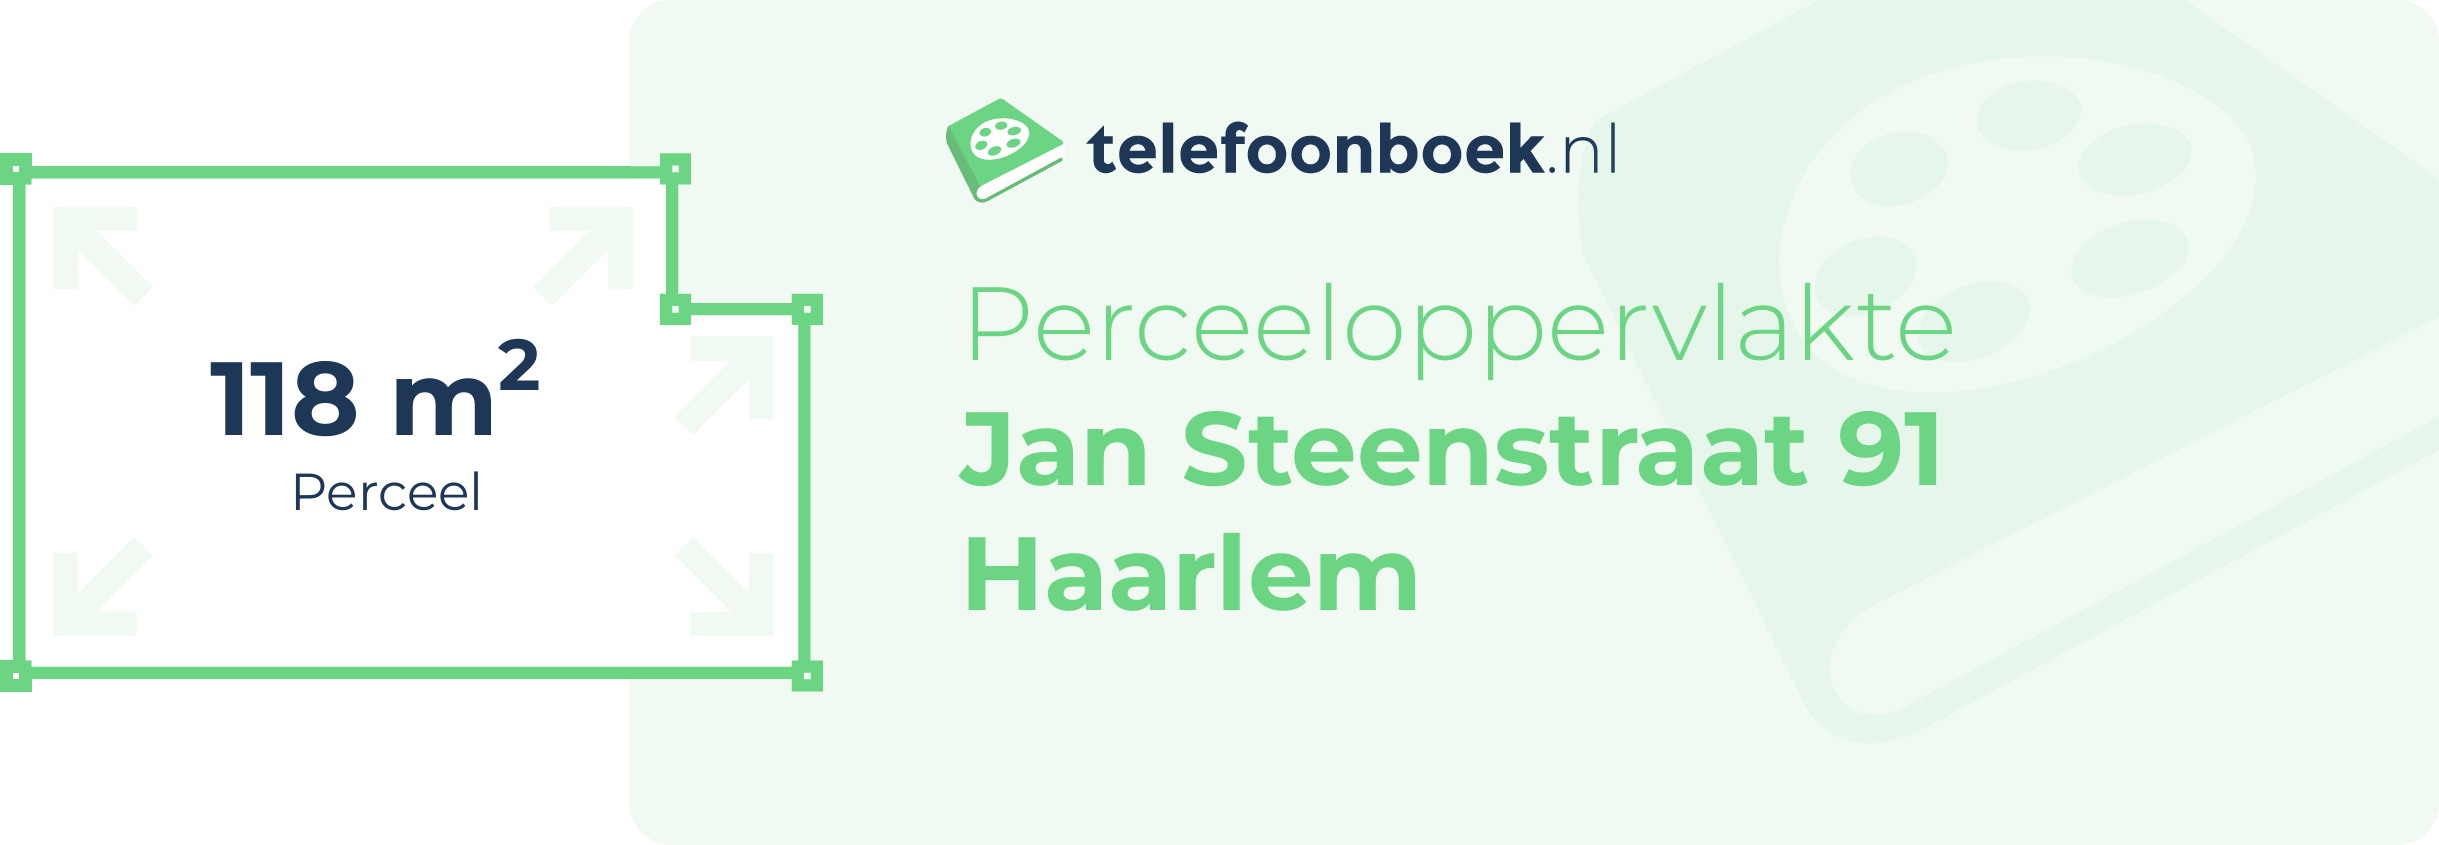 Perceeloppervlakte Jan Steenstraat 91 Haarlem